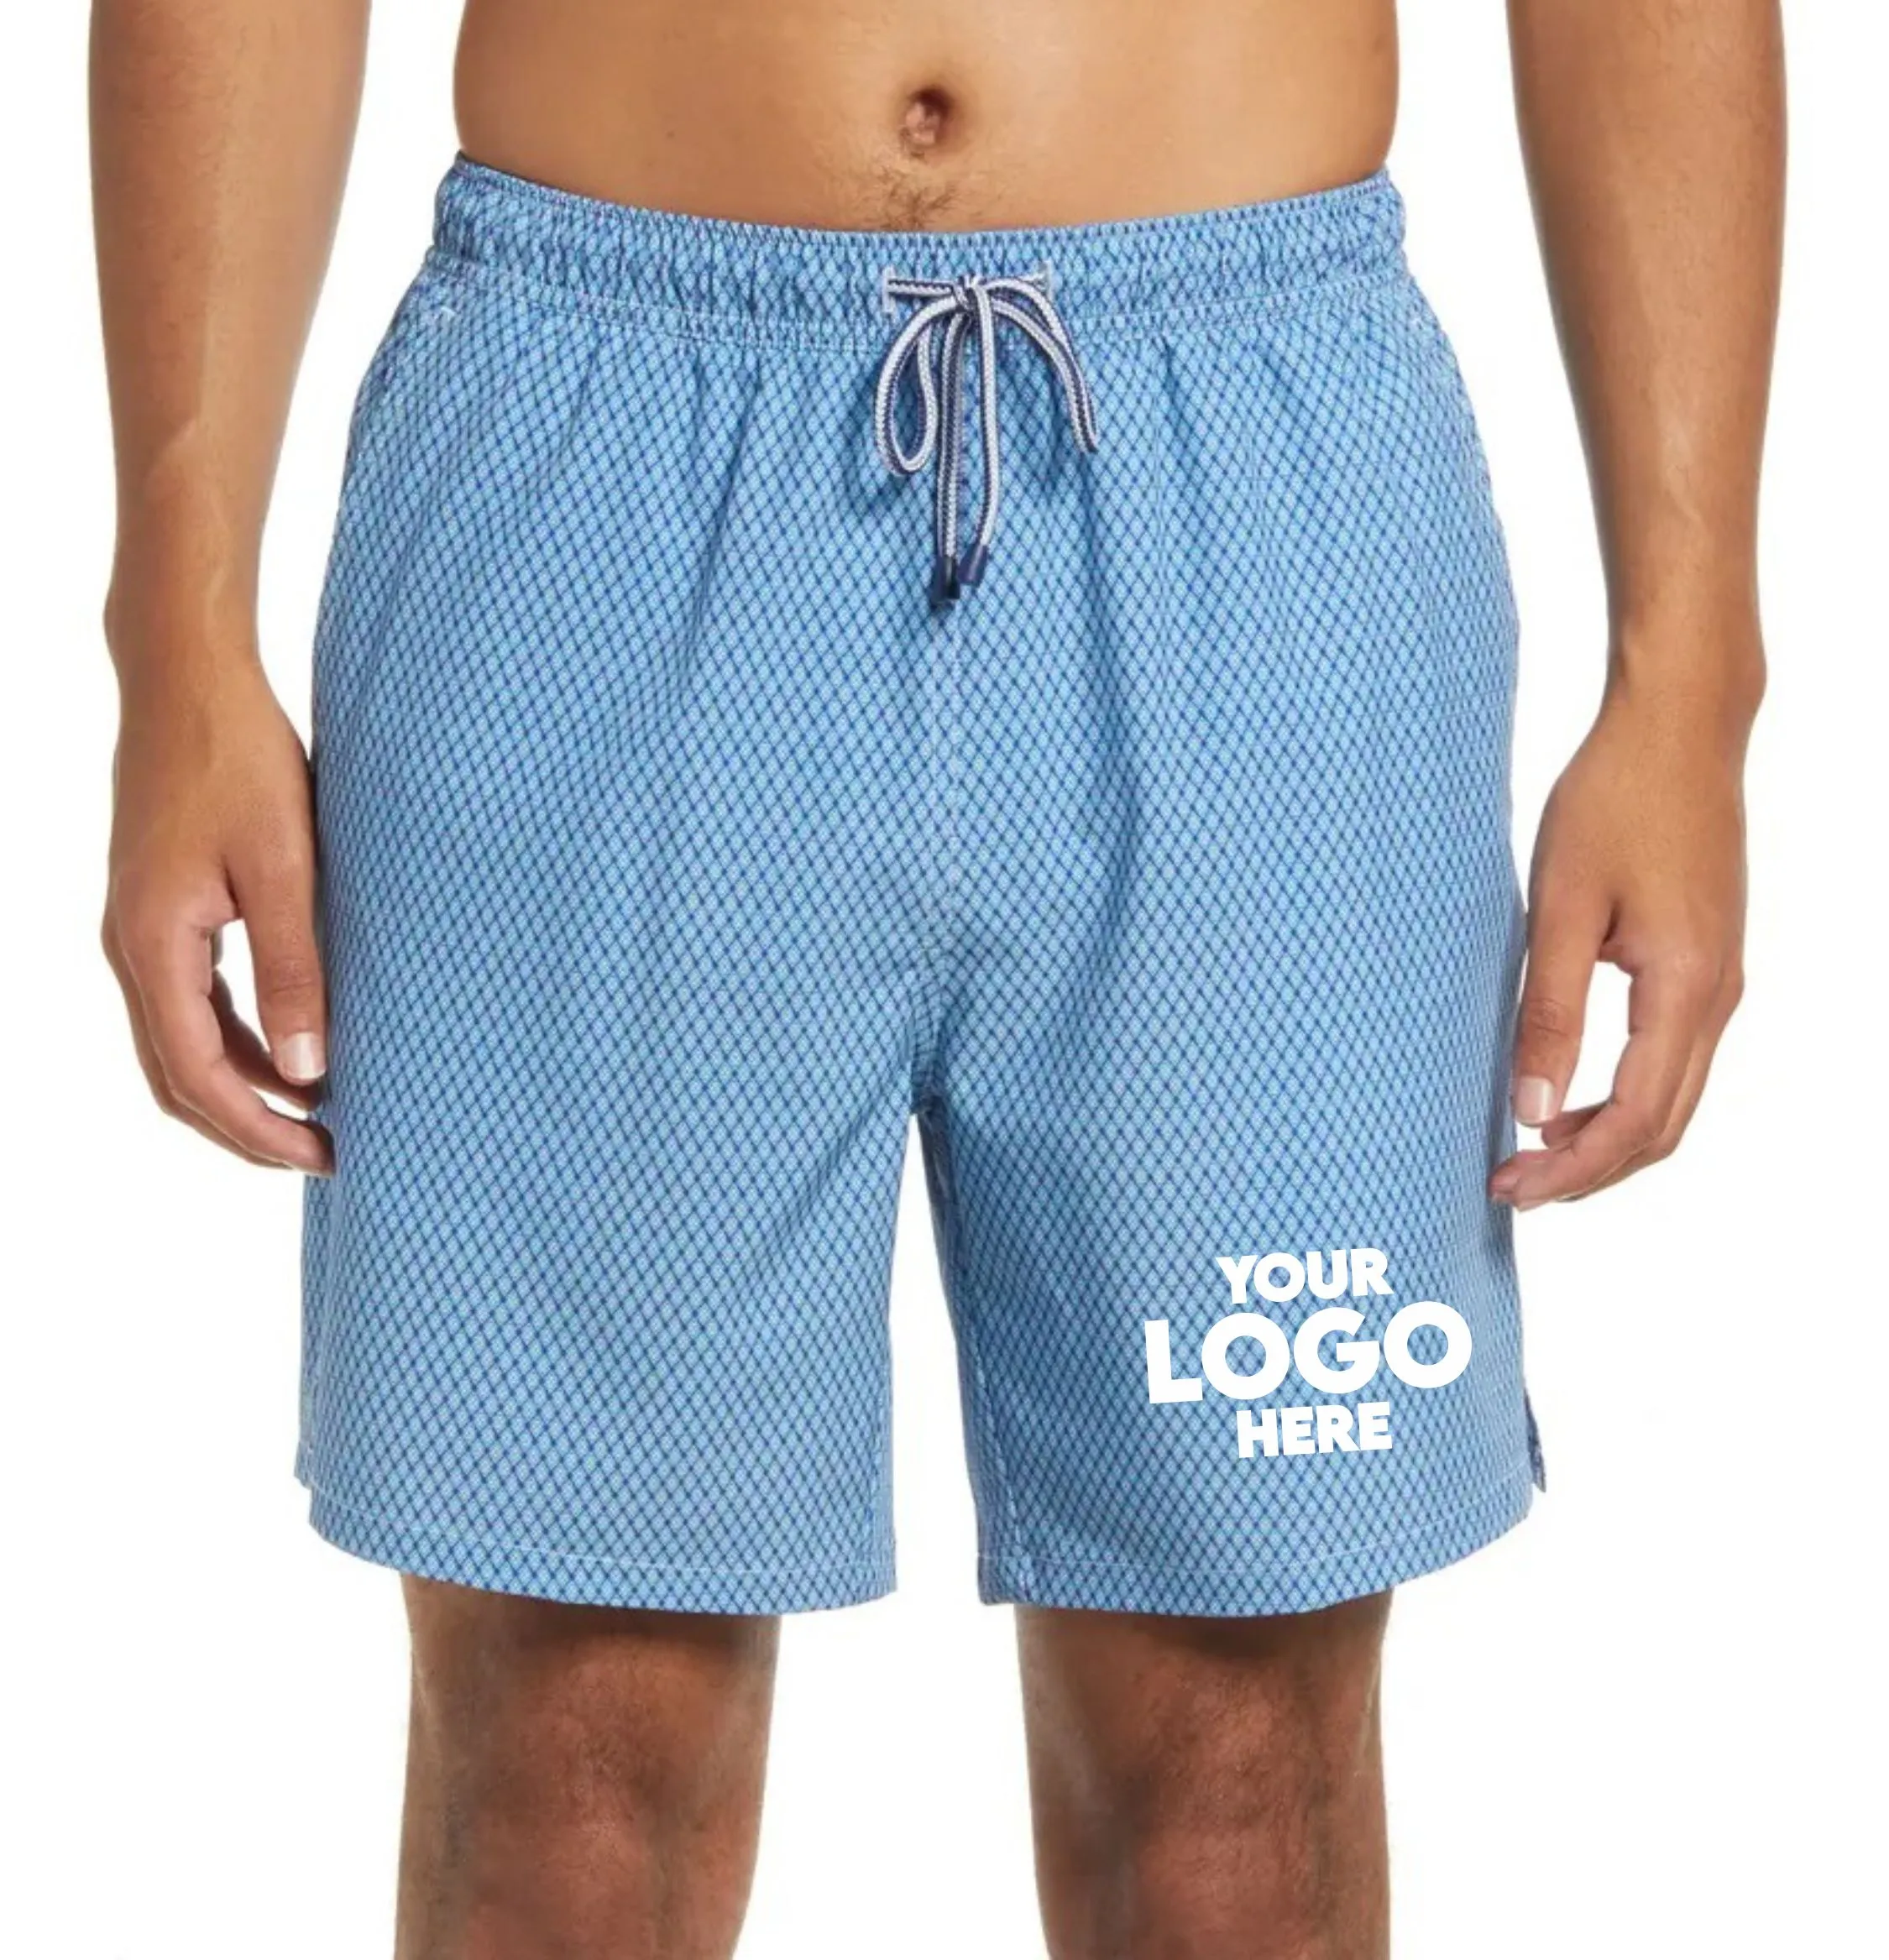 Özel Logo katı renkli tahta Beachwear naylon spor şort rahat toptan tüm satış erkekler gövde plaj erkek yüzmek şort